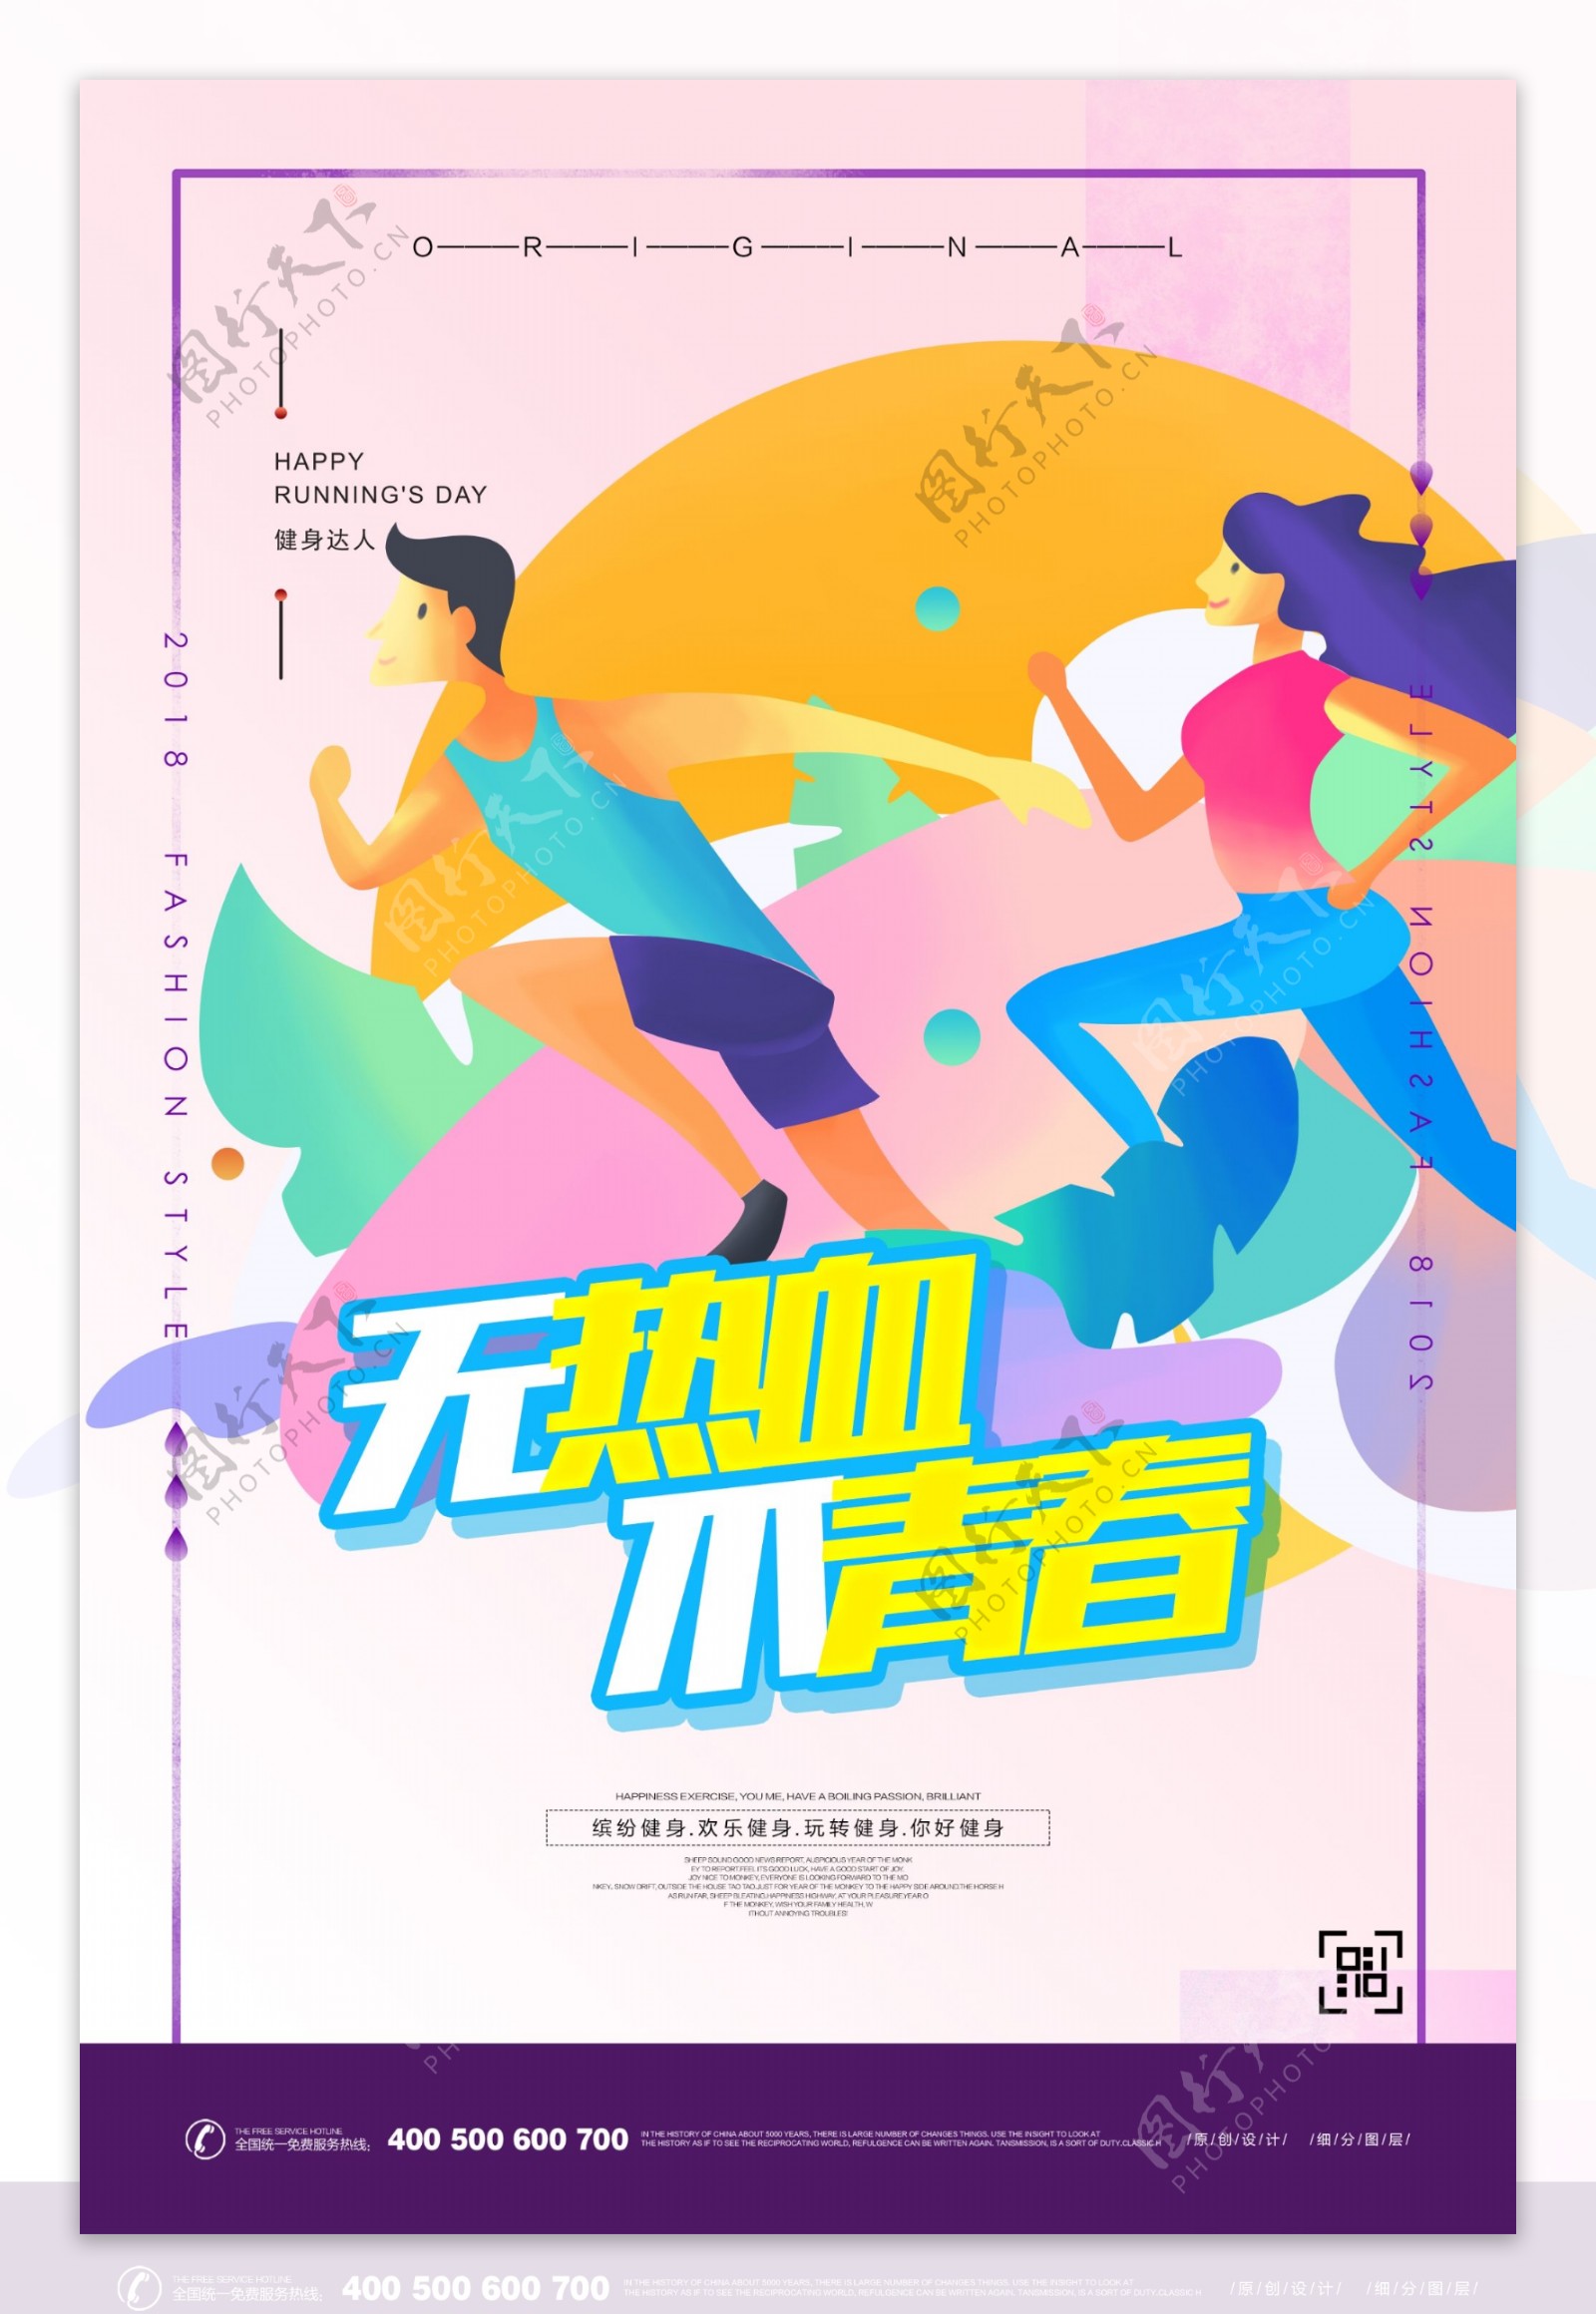 炫彩动感健身体育运动宣传海报设计